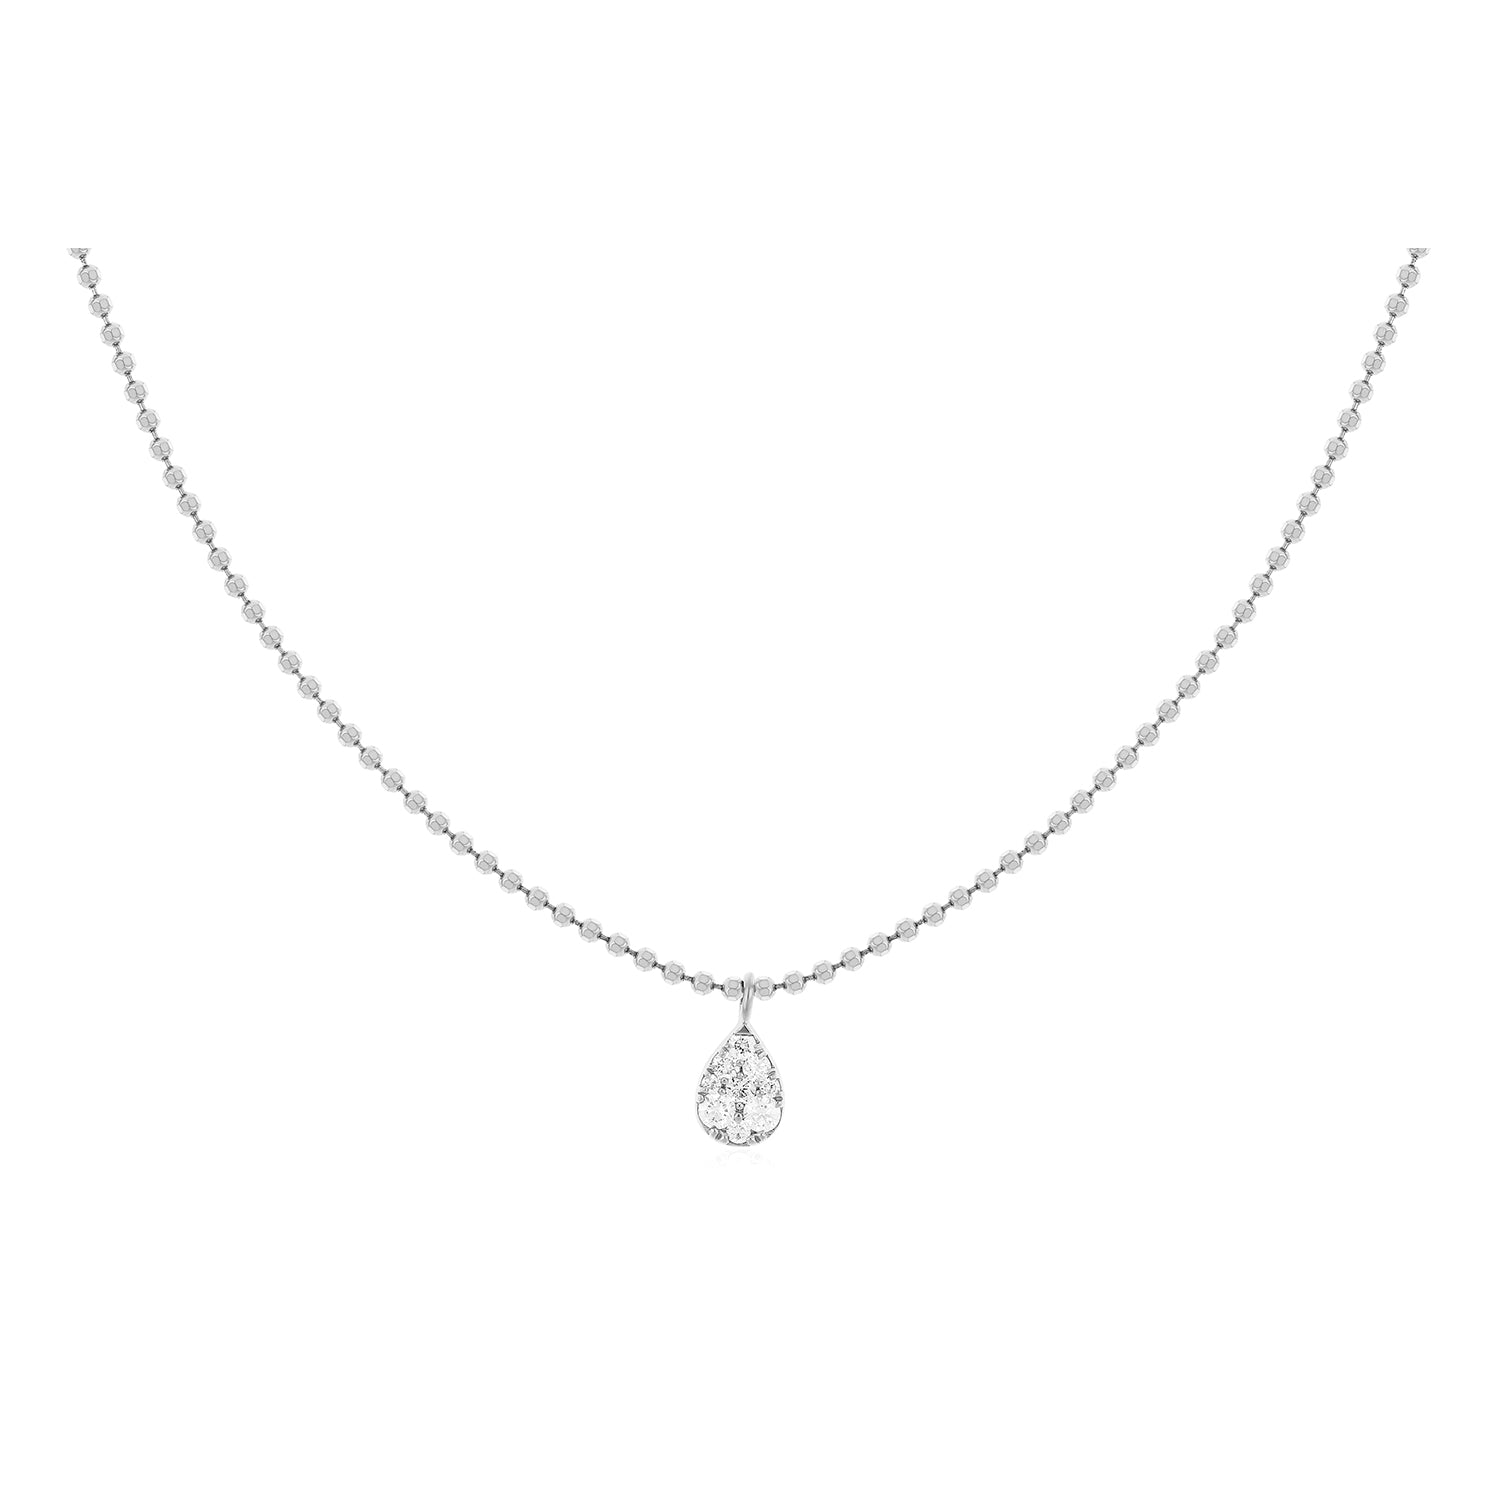 Full Cut Diamond Teardrop Necklace in 14k white gold